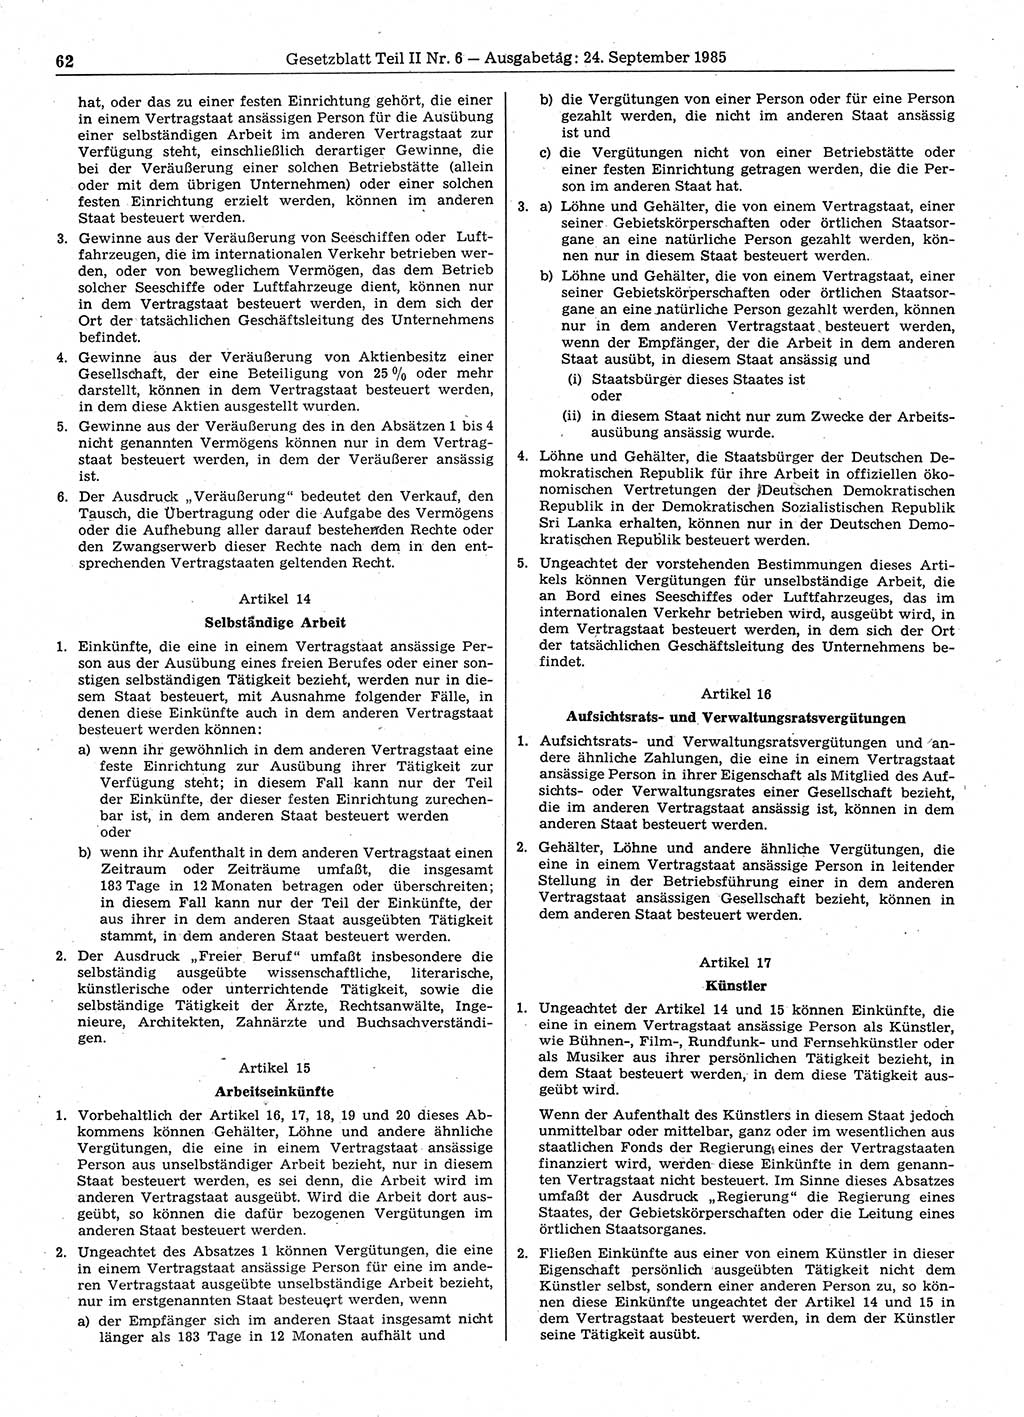 Gesetzblatt (GBl.) der Deutschen Demokratischen Republik (DDR) Teil ⅠⅠ 1985, Seite 62 (GBl. DDR ⅠⅠ 1985, S. 62)